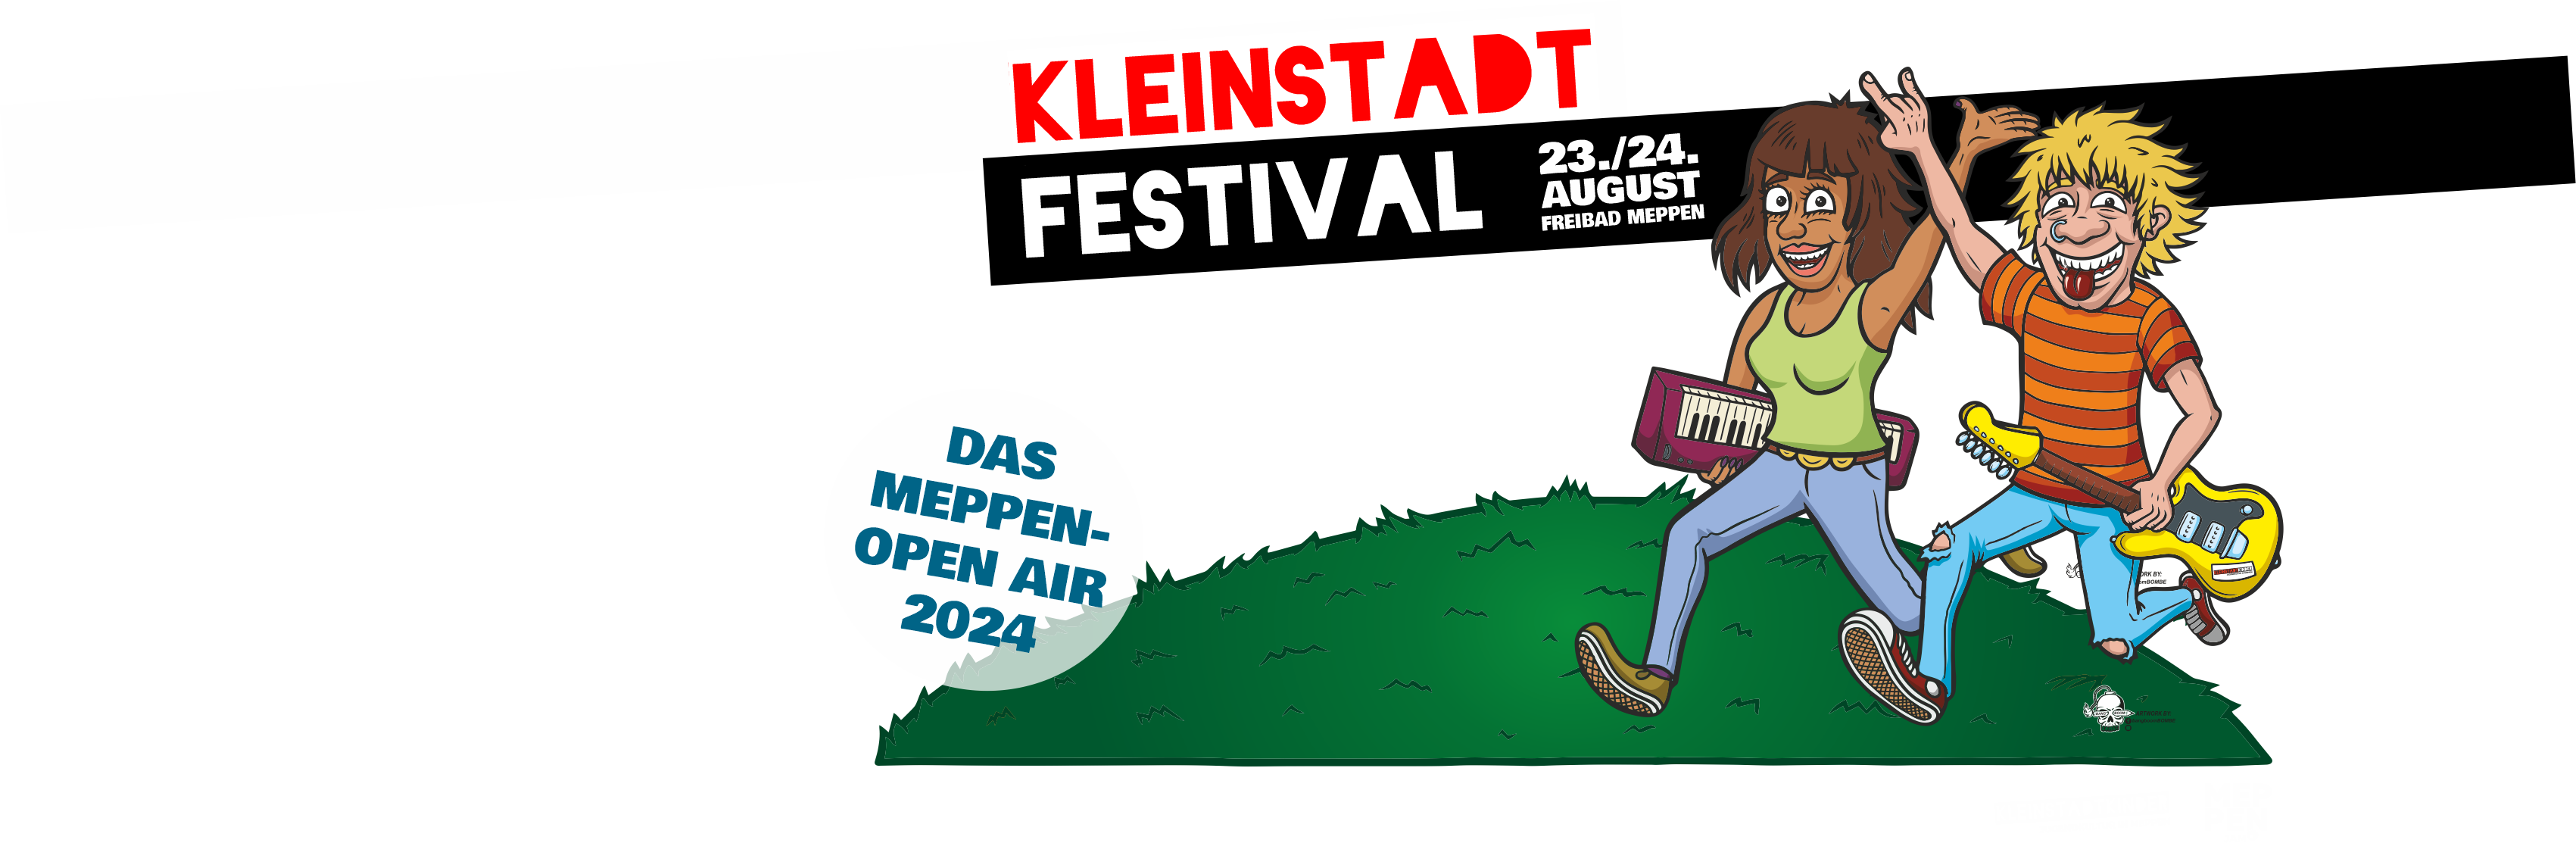 (c) Kleinstadtfestival.de